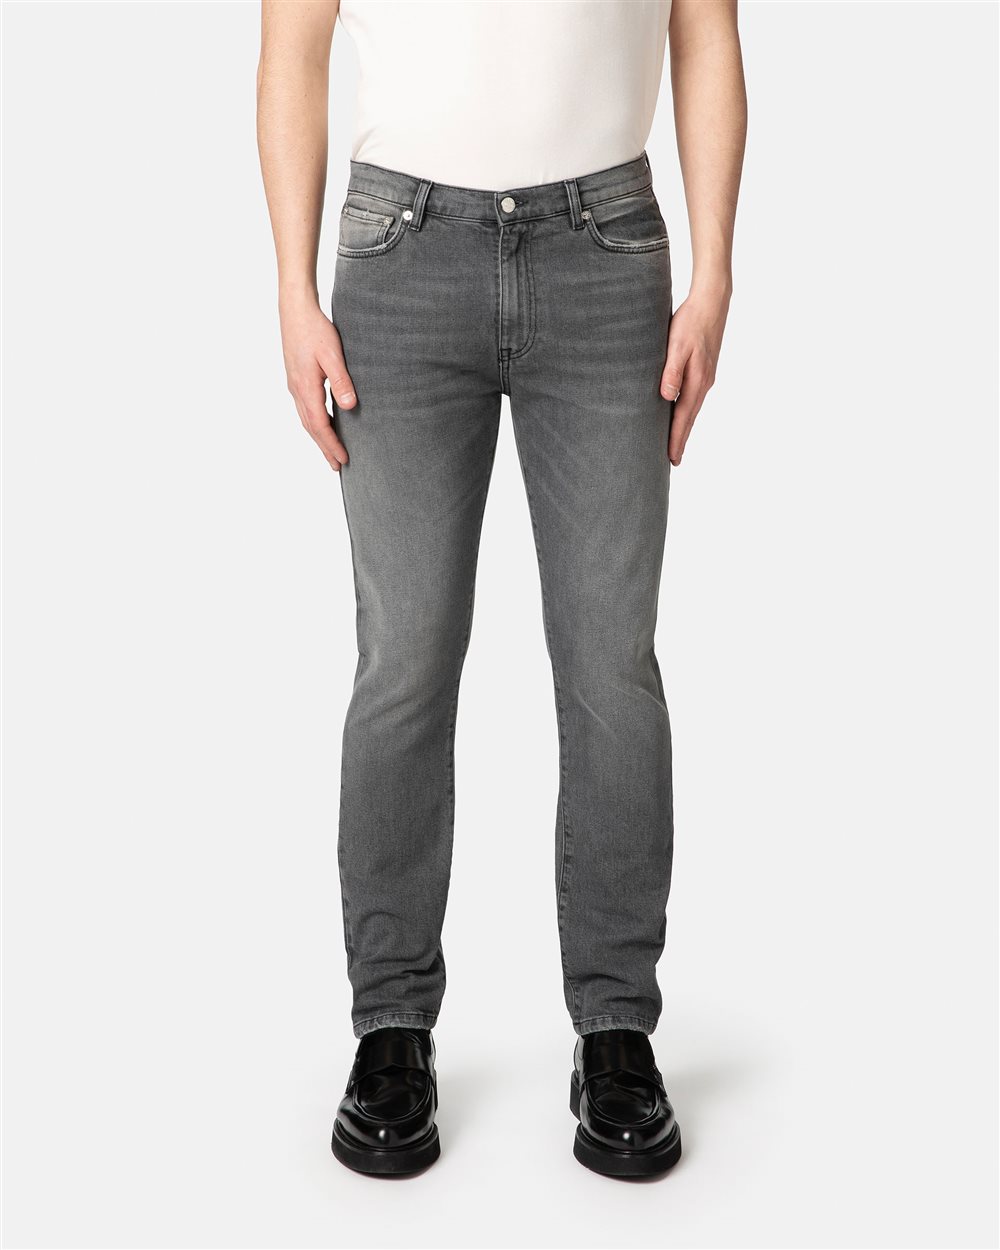 Faded black 5-pocket jeans - Iceberg - Official Website